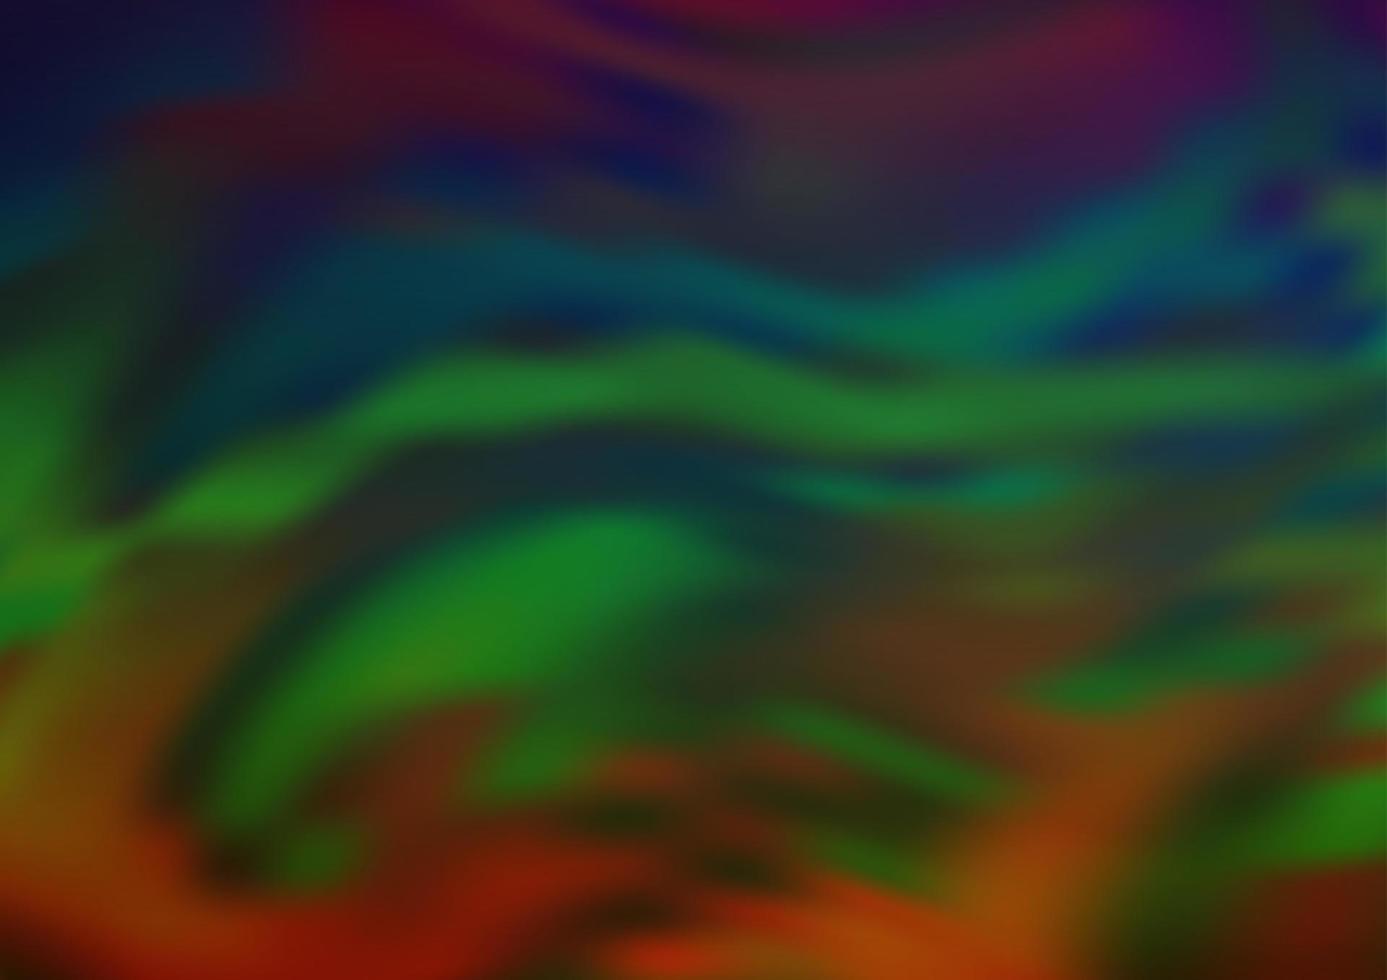 donkere veelkleurige, regenboog vector abstracte wazig sjabloon.